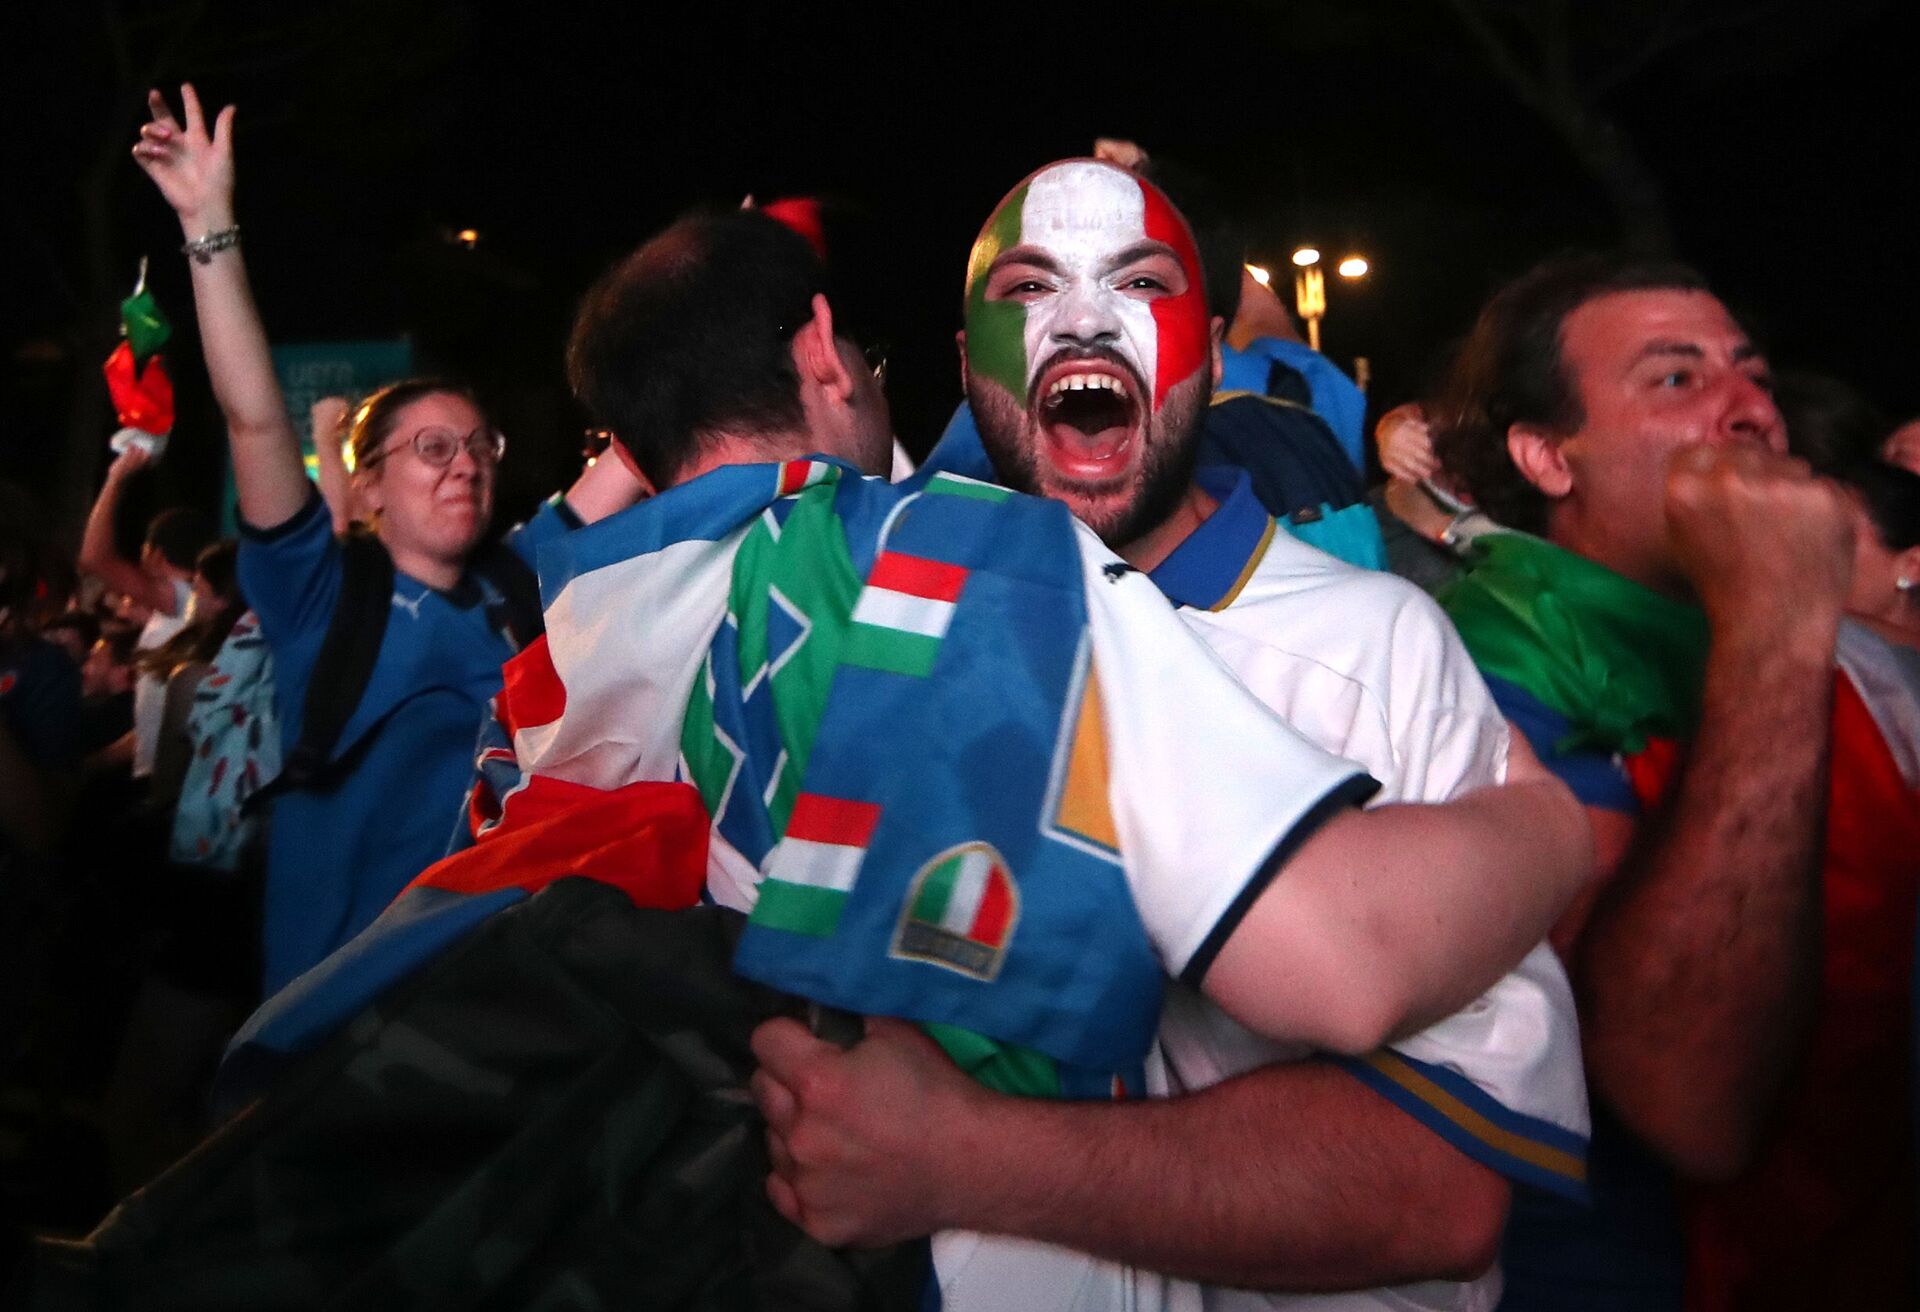 Euro 2020: Itália vence Inglaterra nos pênaltis por 3 a 2 e é bicampeã da Europa (FOTOS) - Sputnik Brasil, 1920, 11.07.2021